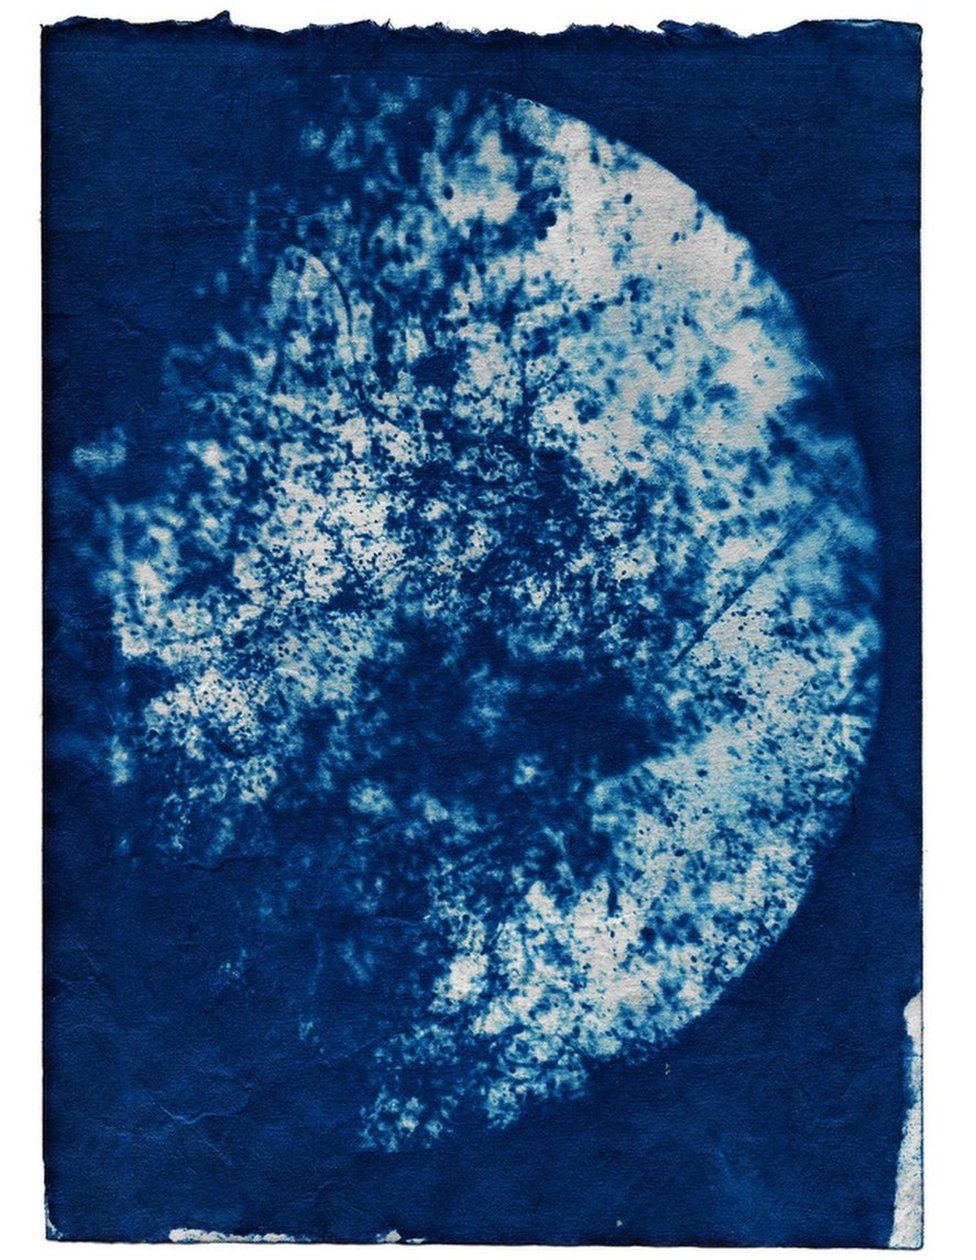 Цианотипическое изображение, сделанное Мариной Витальоне, демонстрирующее образец загрязненного воздуха из Друри-Уэй, Уэмбли, Северо-Западный Лондон